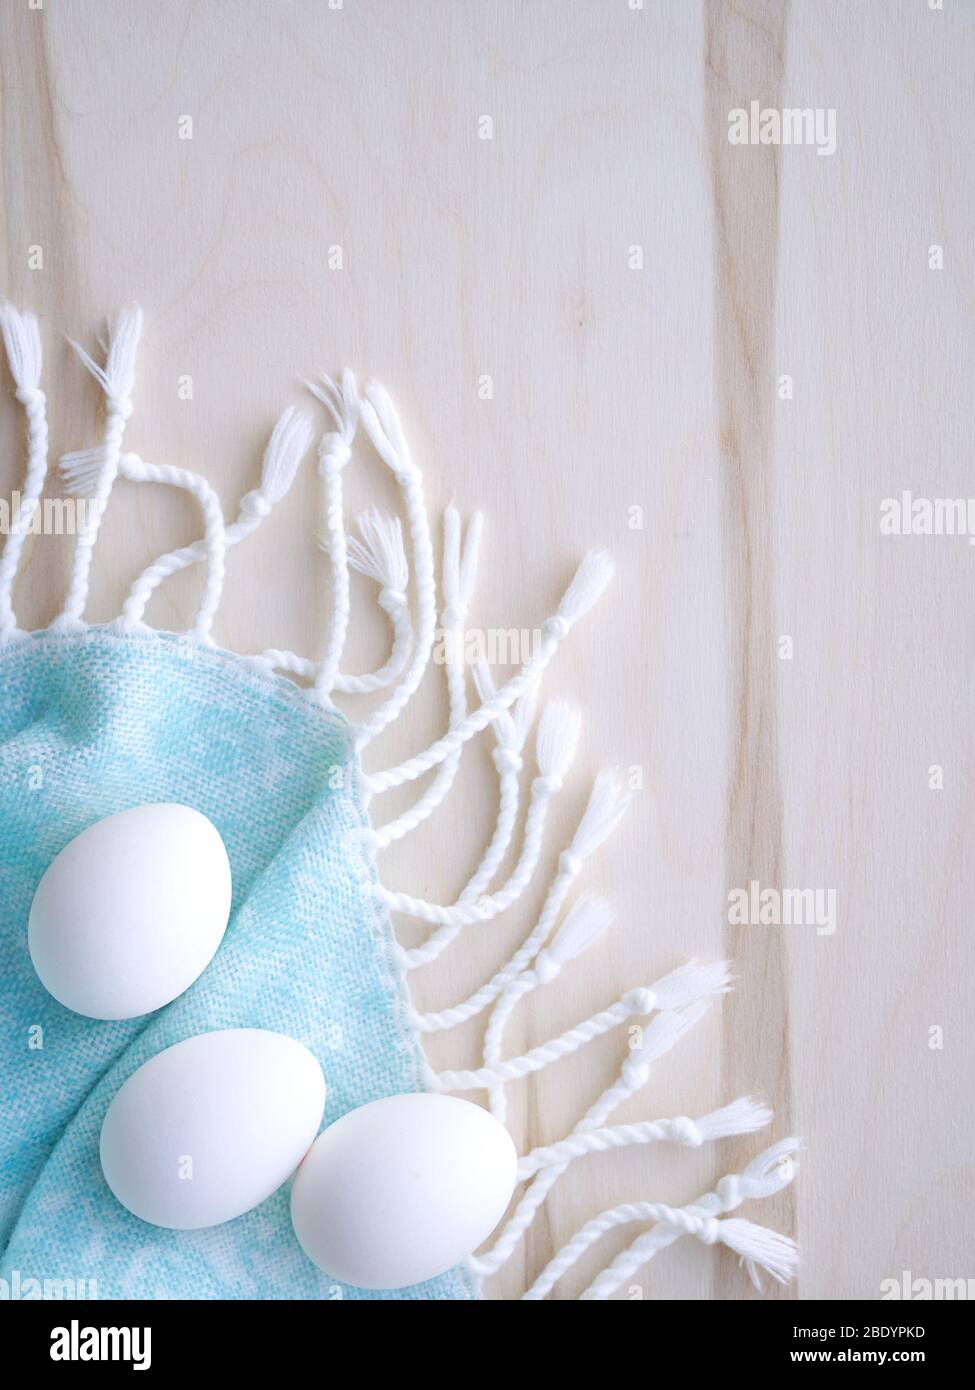 Oeufs blancs et bruns de Pâques sur fond bleu clair et bois avec décoration de fleurs. Banque D'Images